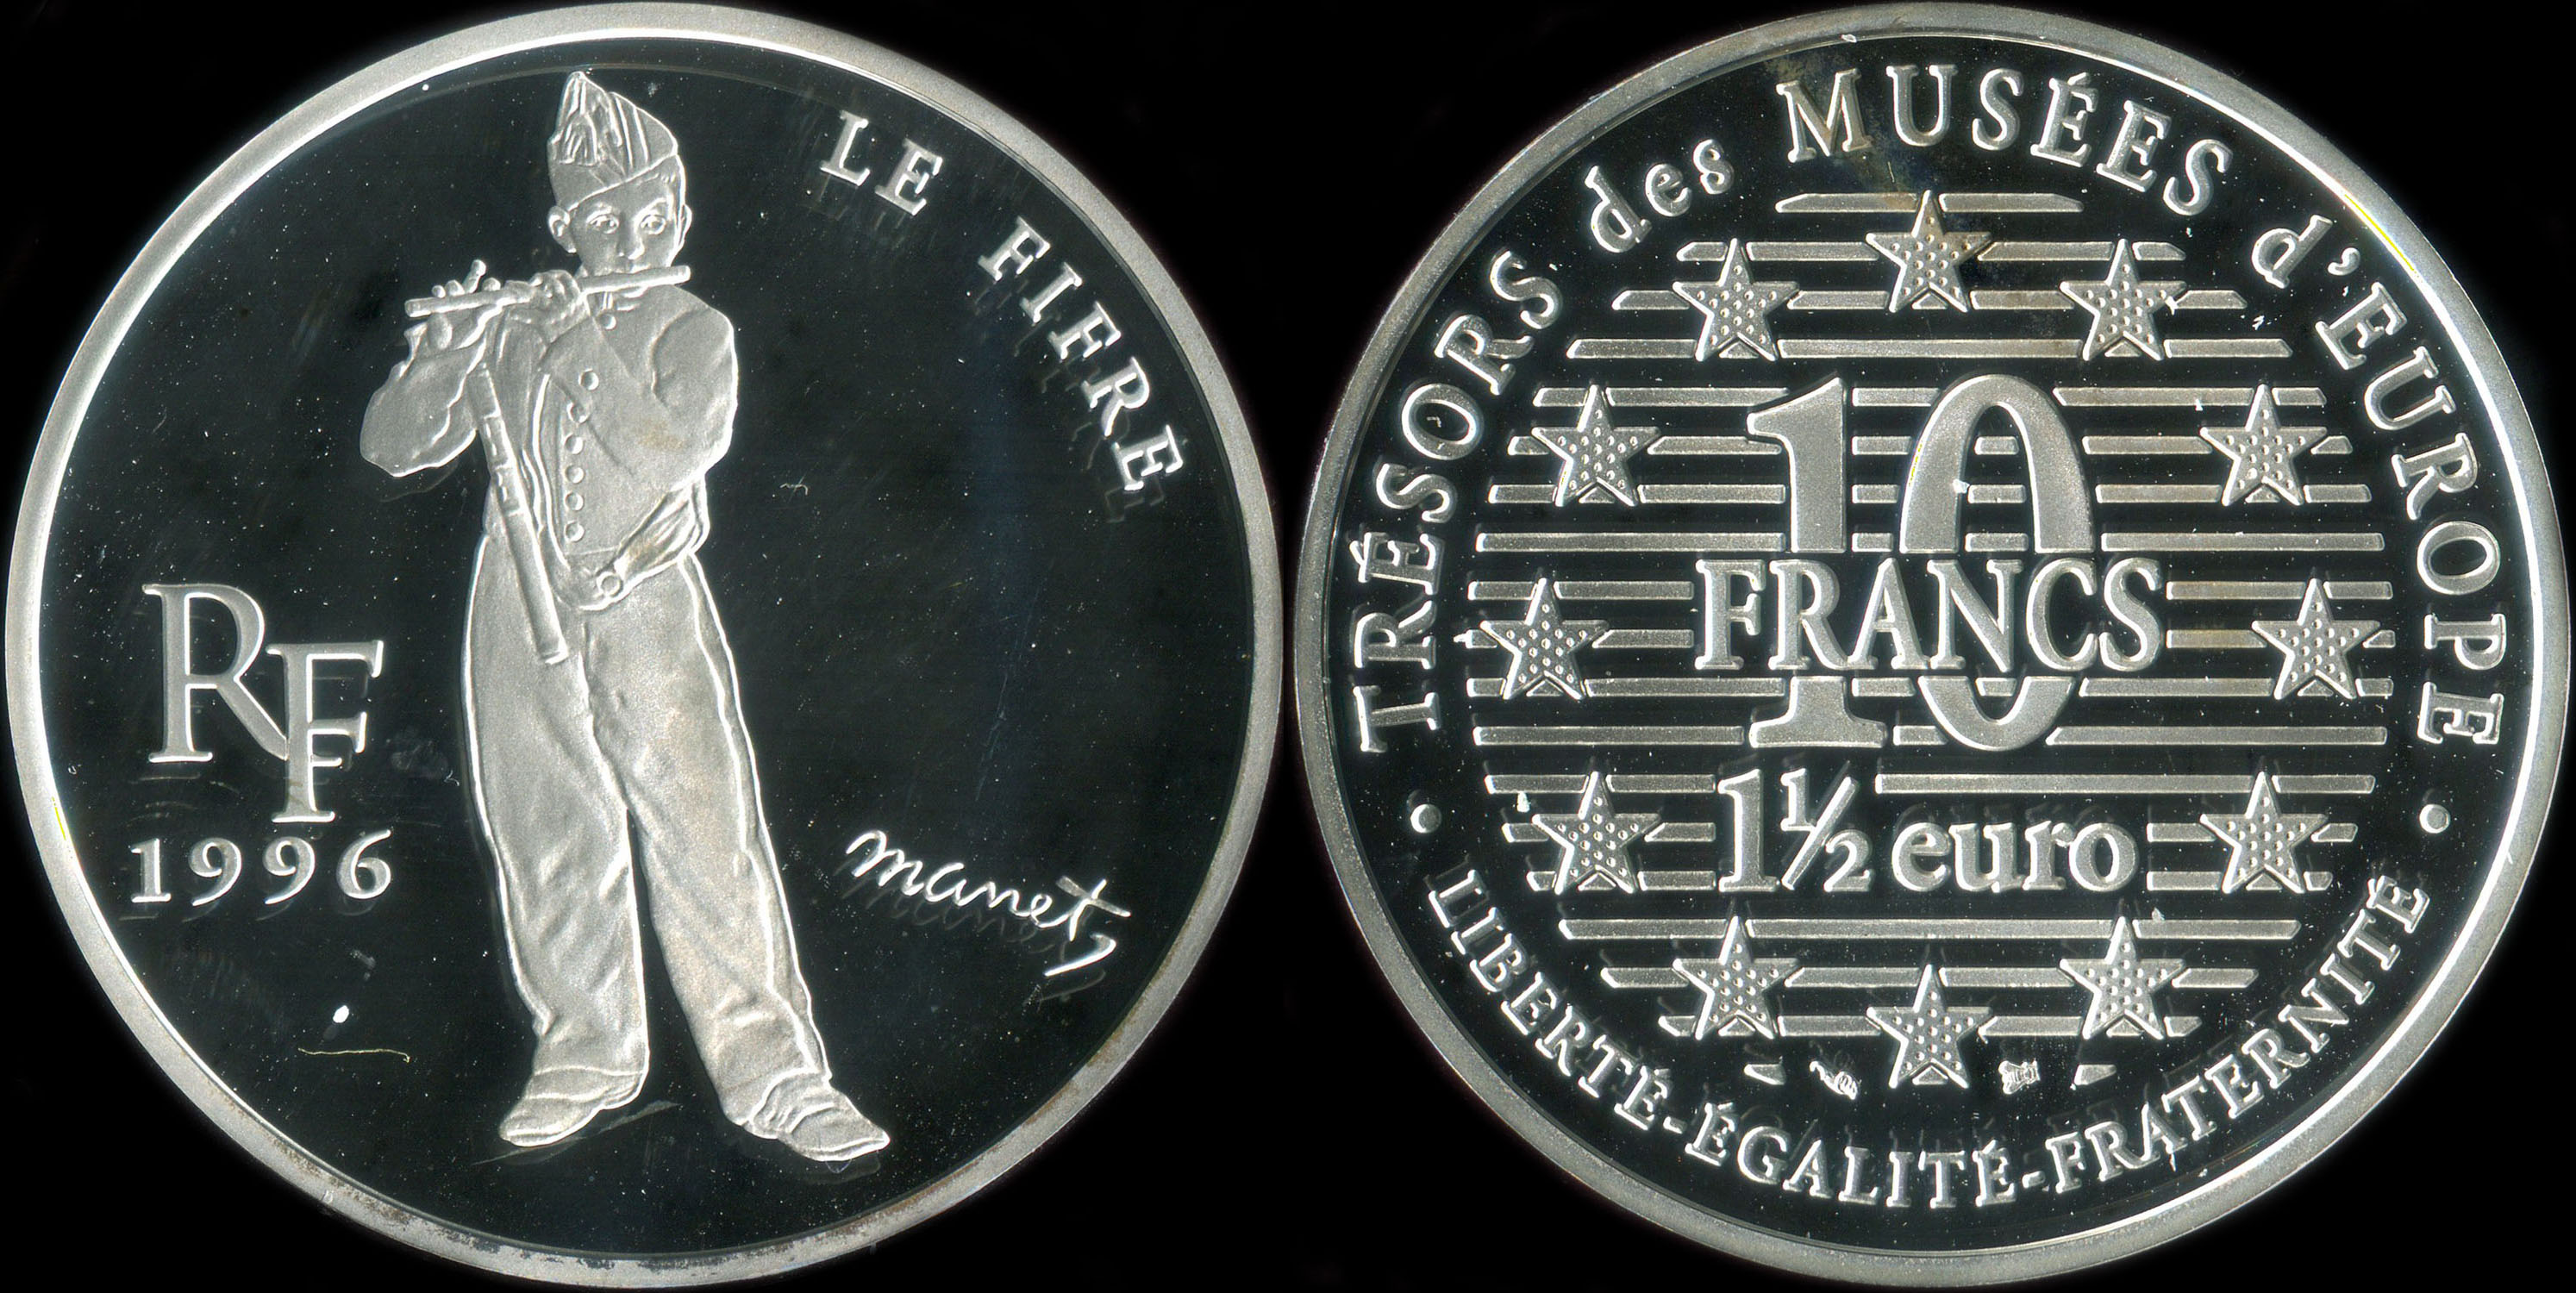 Pice de 10 francs - 1  euro 1996 - Trsors des Muses d'Europe - Le Fifre par Edouard Manet (Muse d'Orsay  Paris)